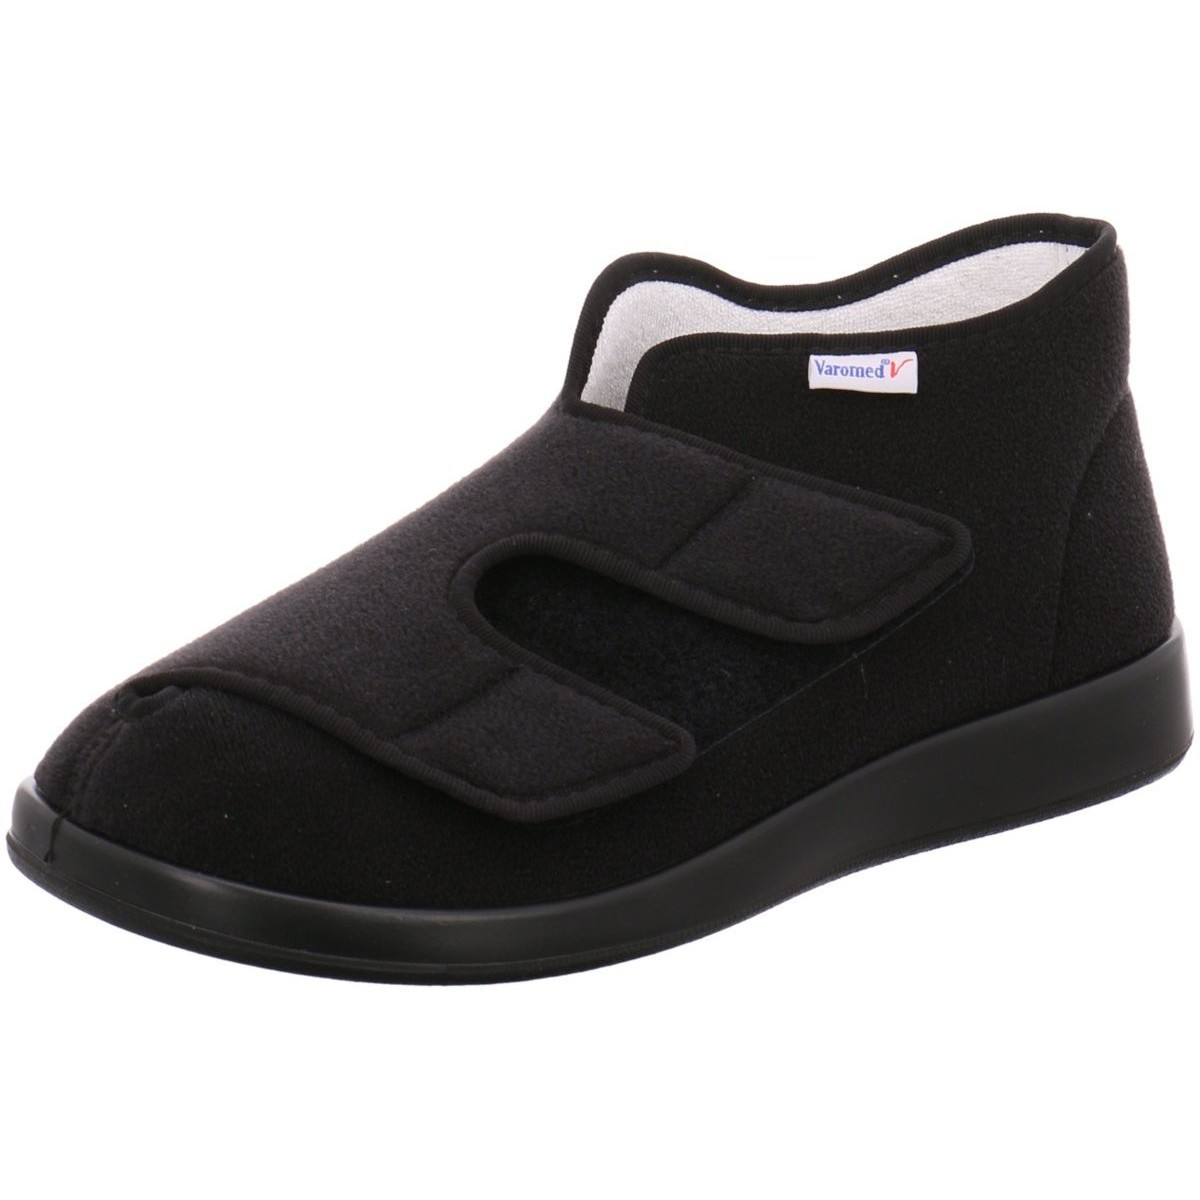 Varomed Genua verbandschoen / pantoffel kleur Zwart maat 43 (DIN & ISO gecertificeerd)